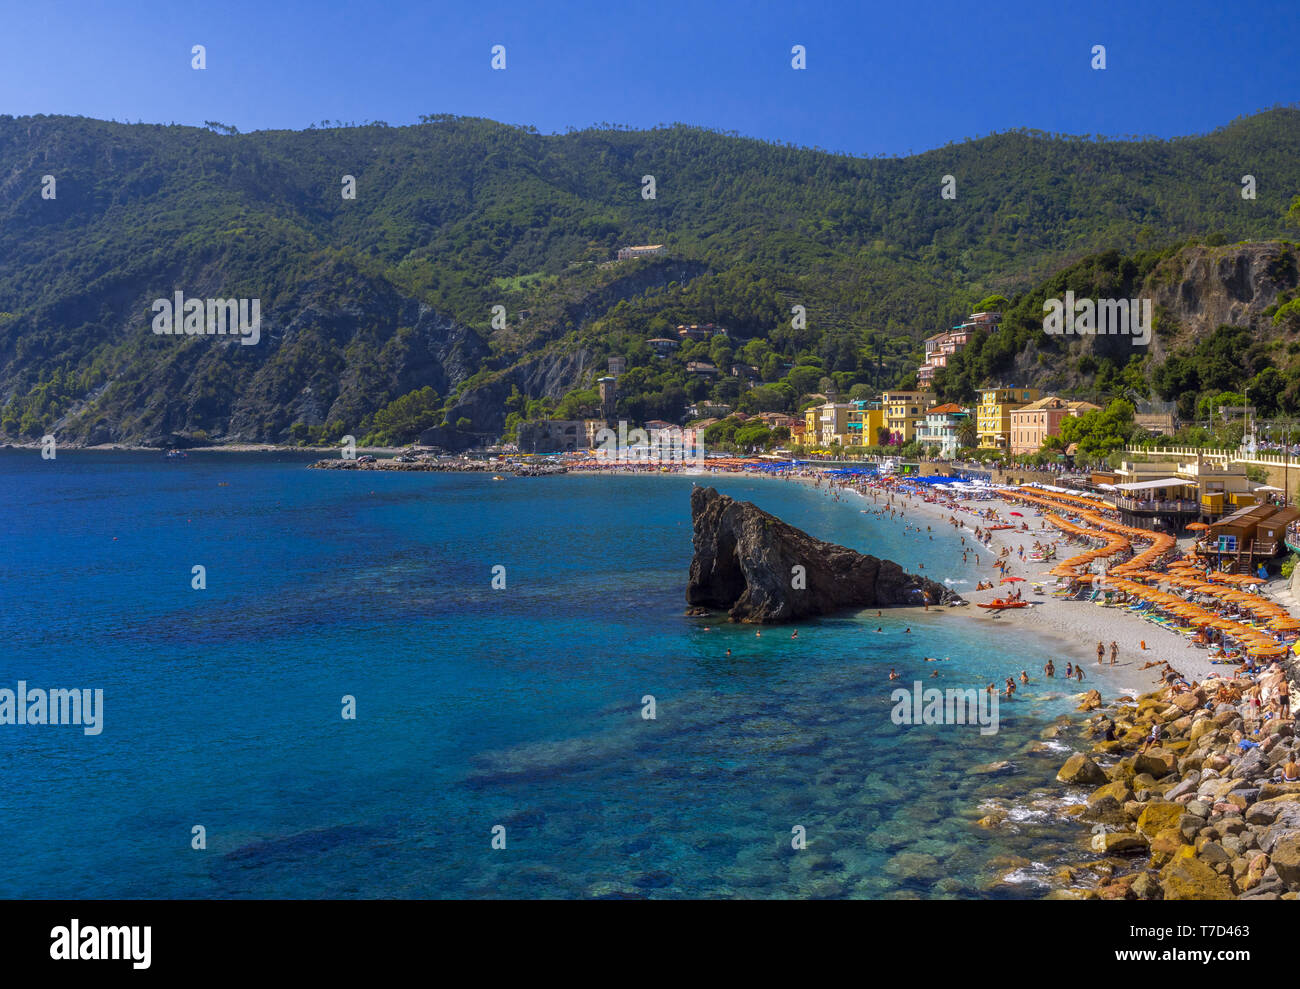 Beach of Monterosso al Mare, Italy Stock Photo